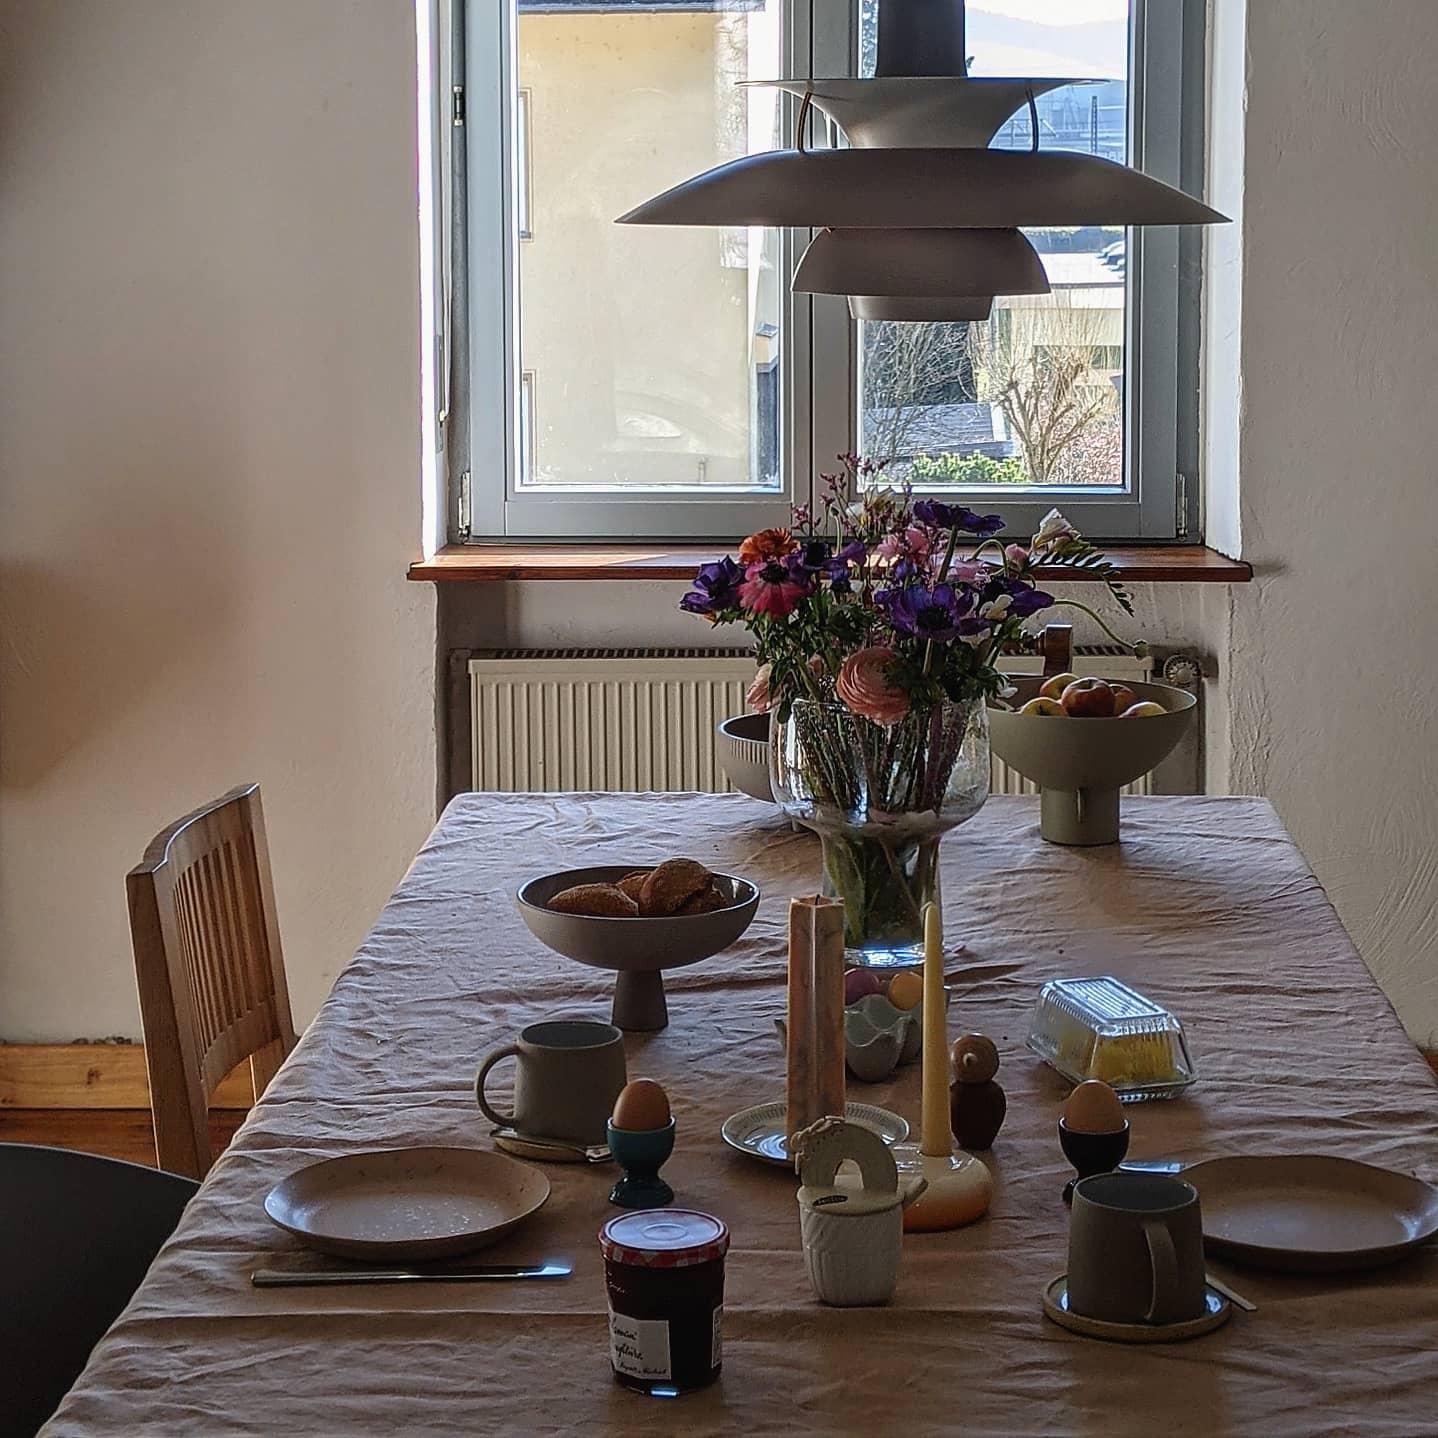 #frühling#blumen#esszimmer#altbau#esstisch#wochenende#living#home#interior#couchstyle#scandinavisch#hygge#homestory